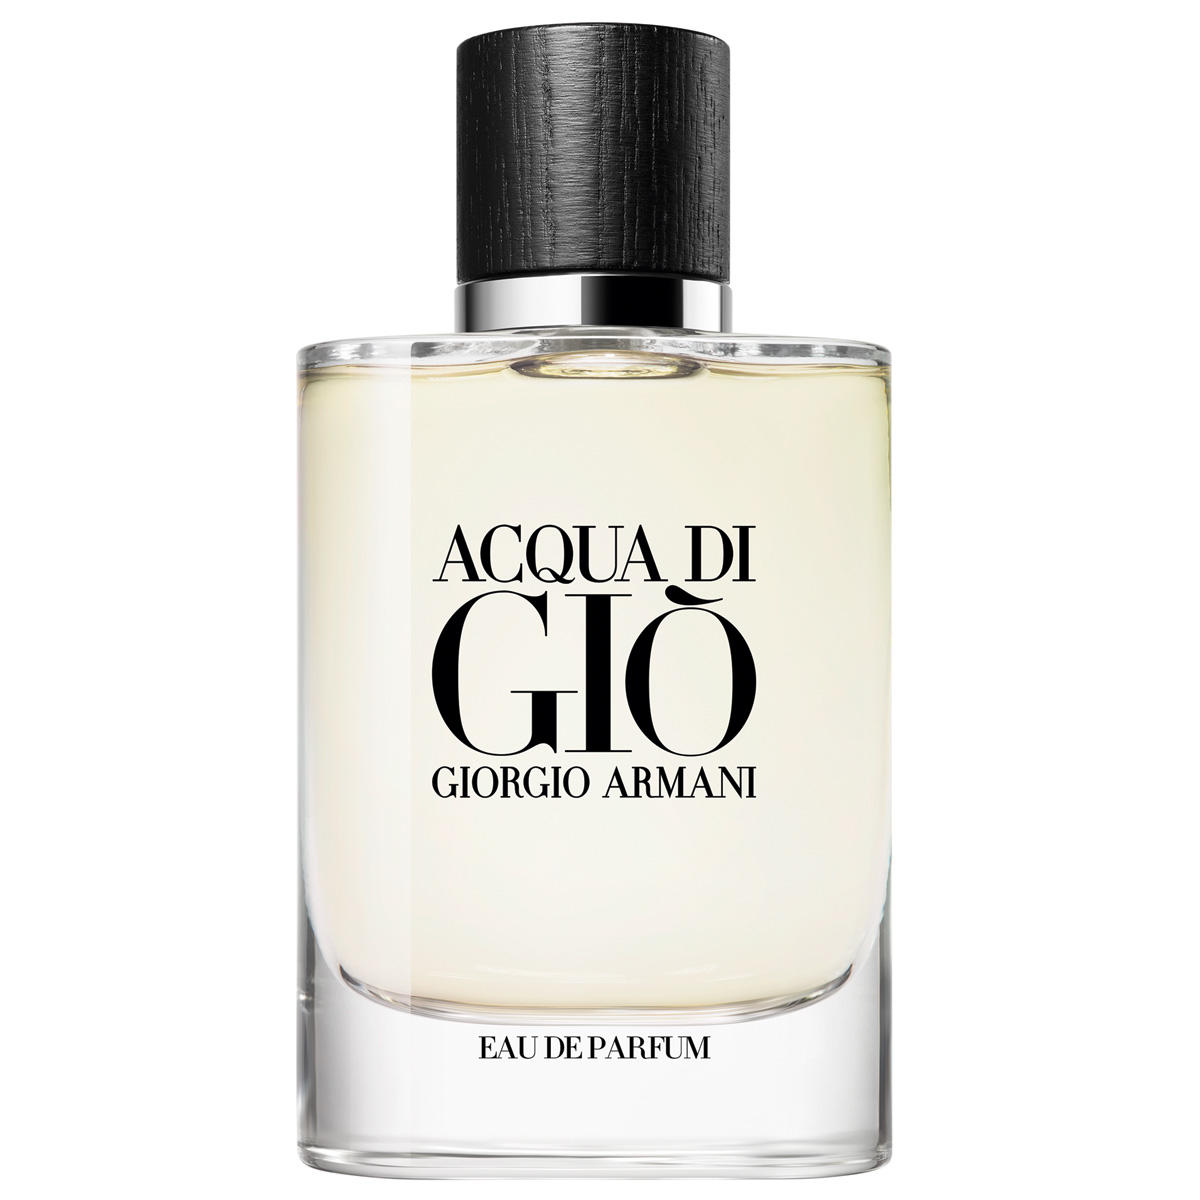 Giorgio Armani ACQUA DI GIÒ Refillable Eau de Parfum 75 ml